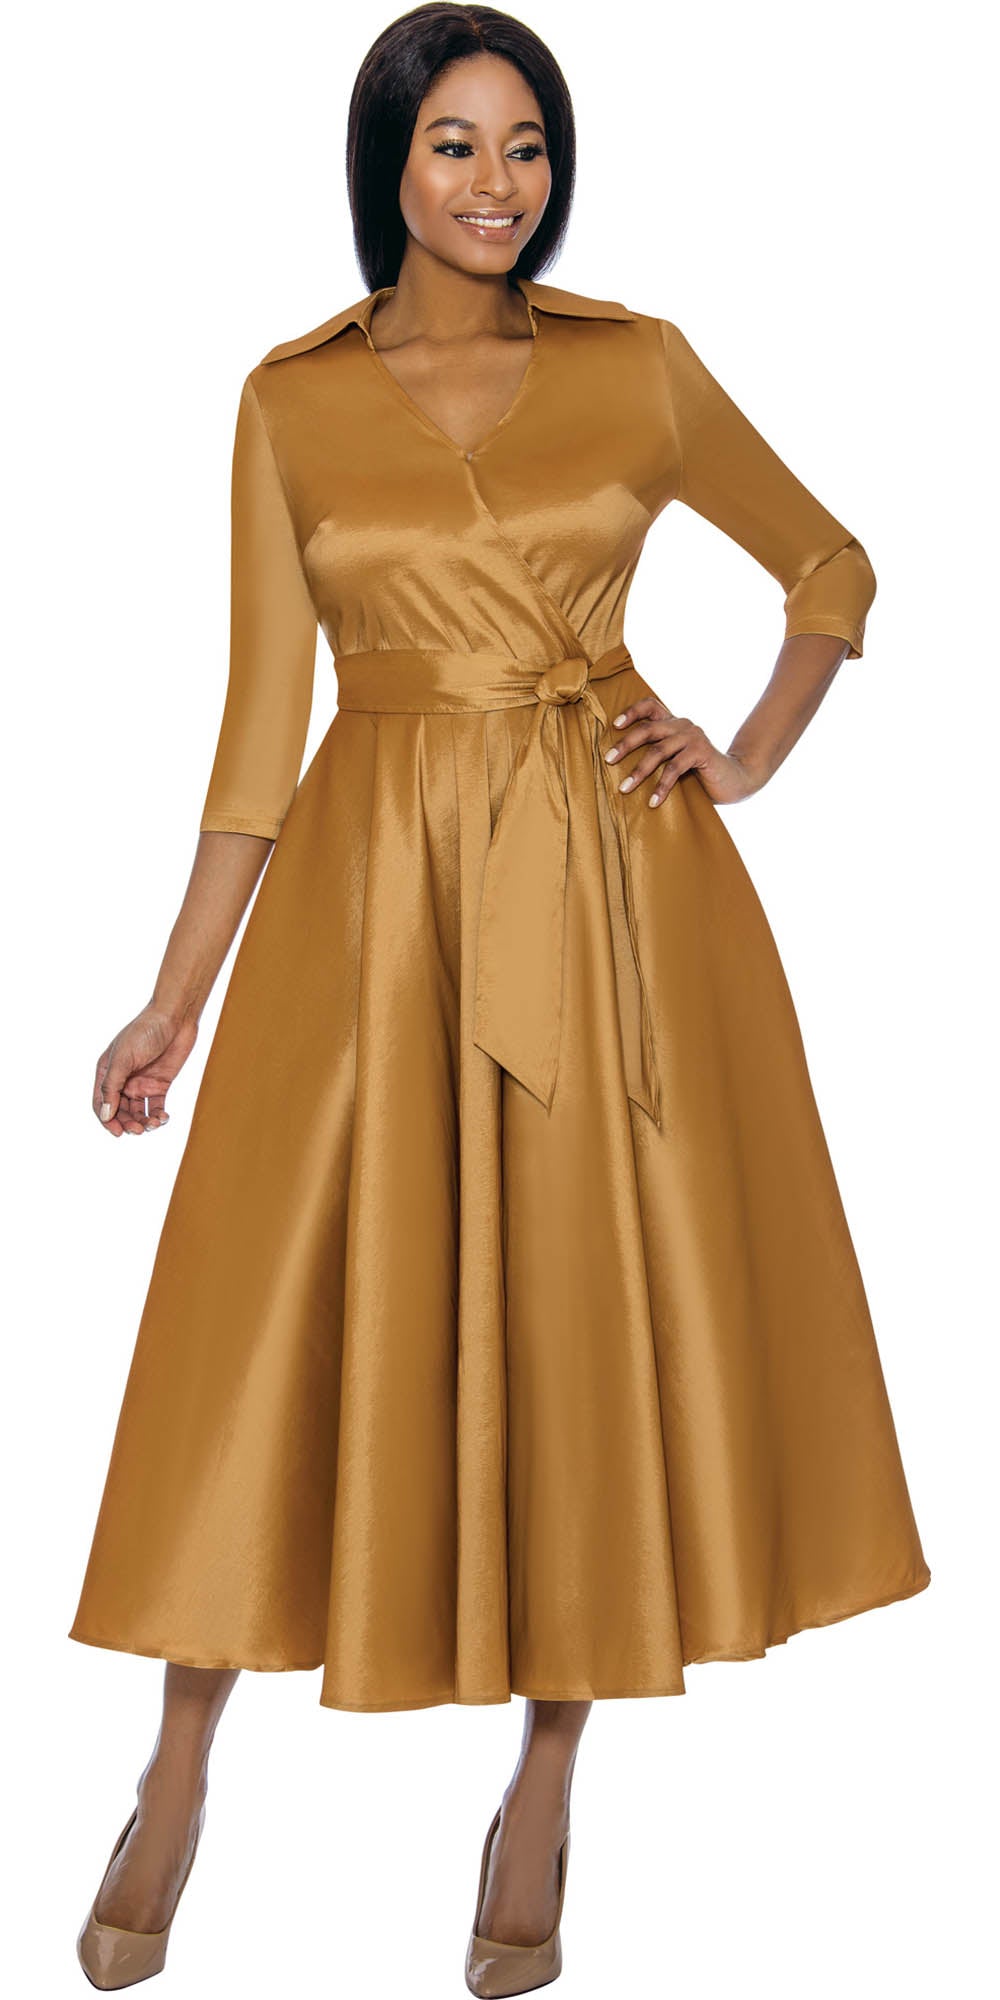 Terramina - 7869 - Gold - Silk Look Dress With Sash Belt